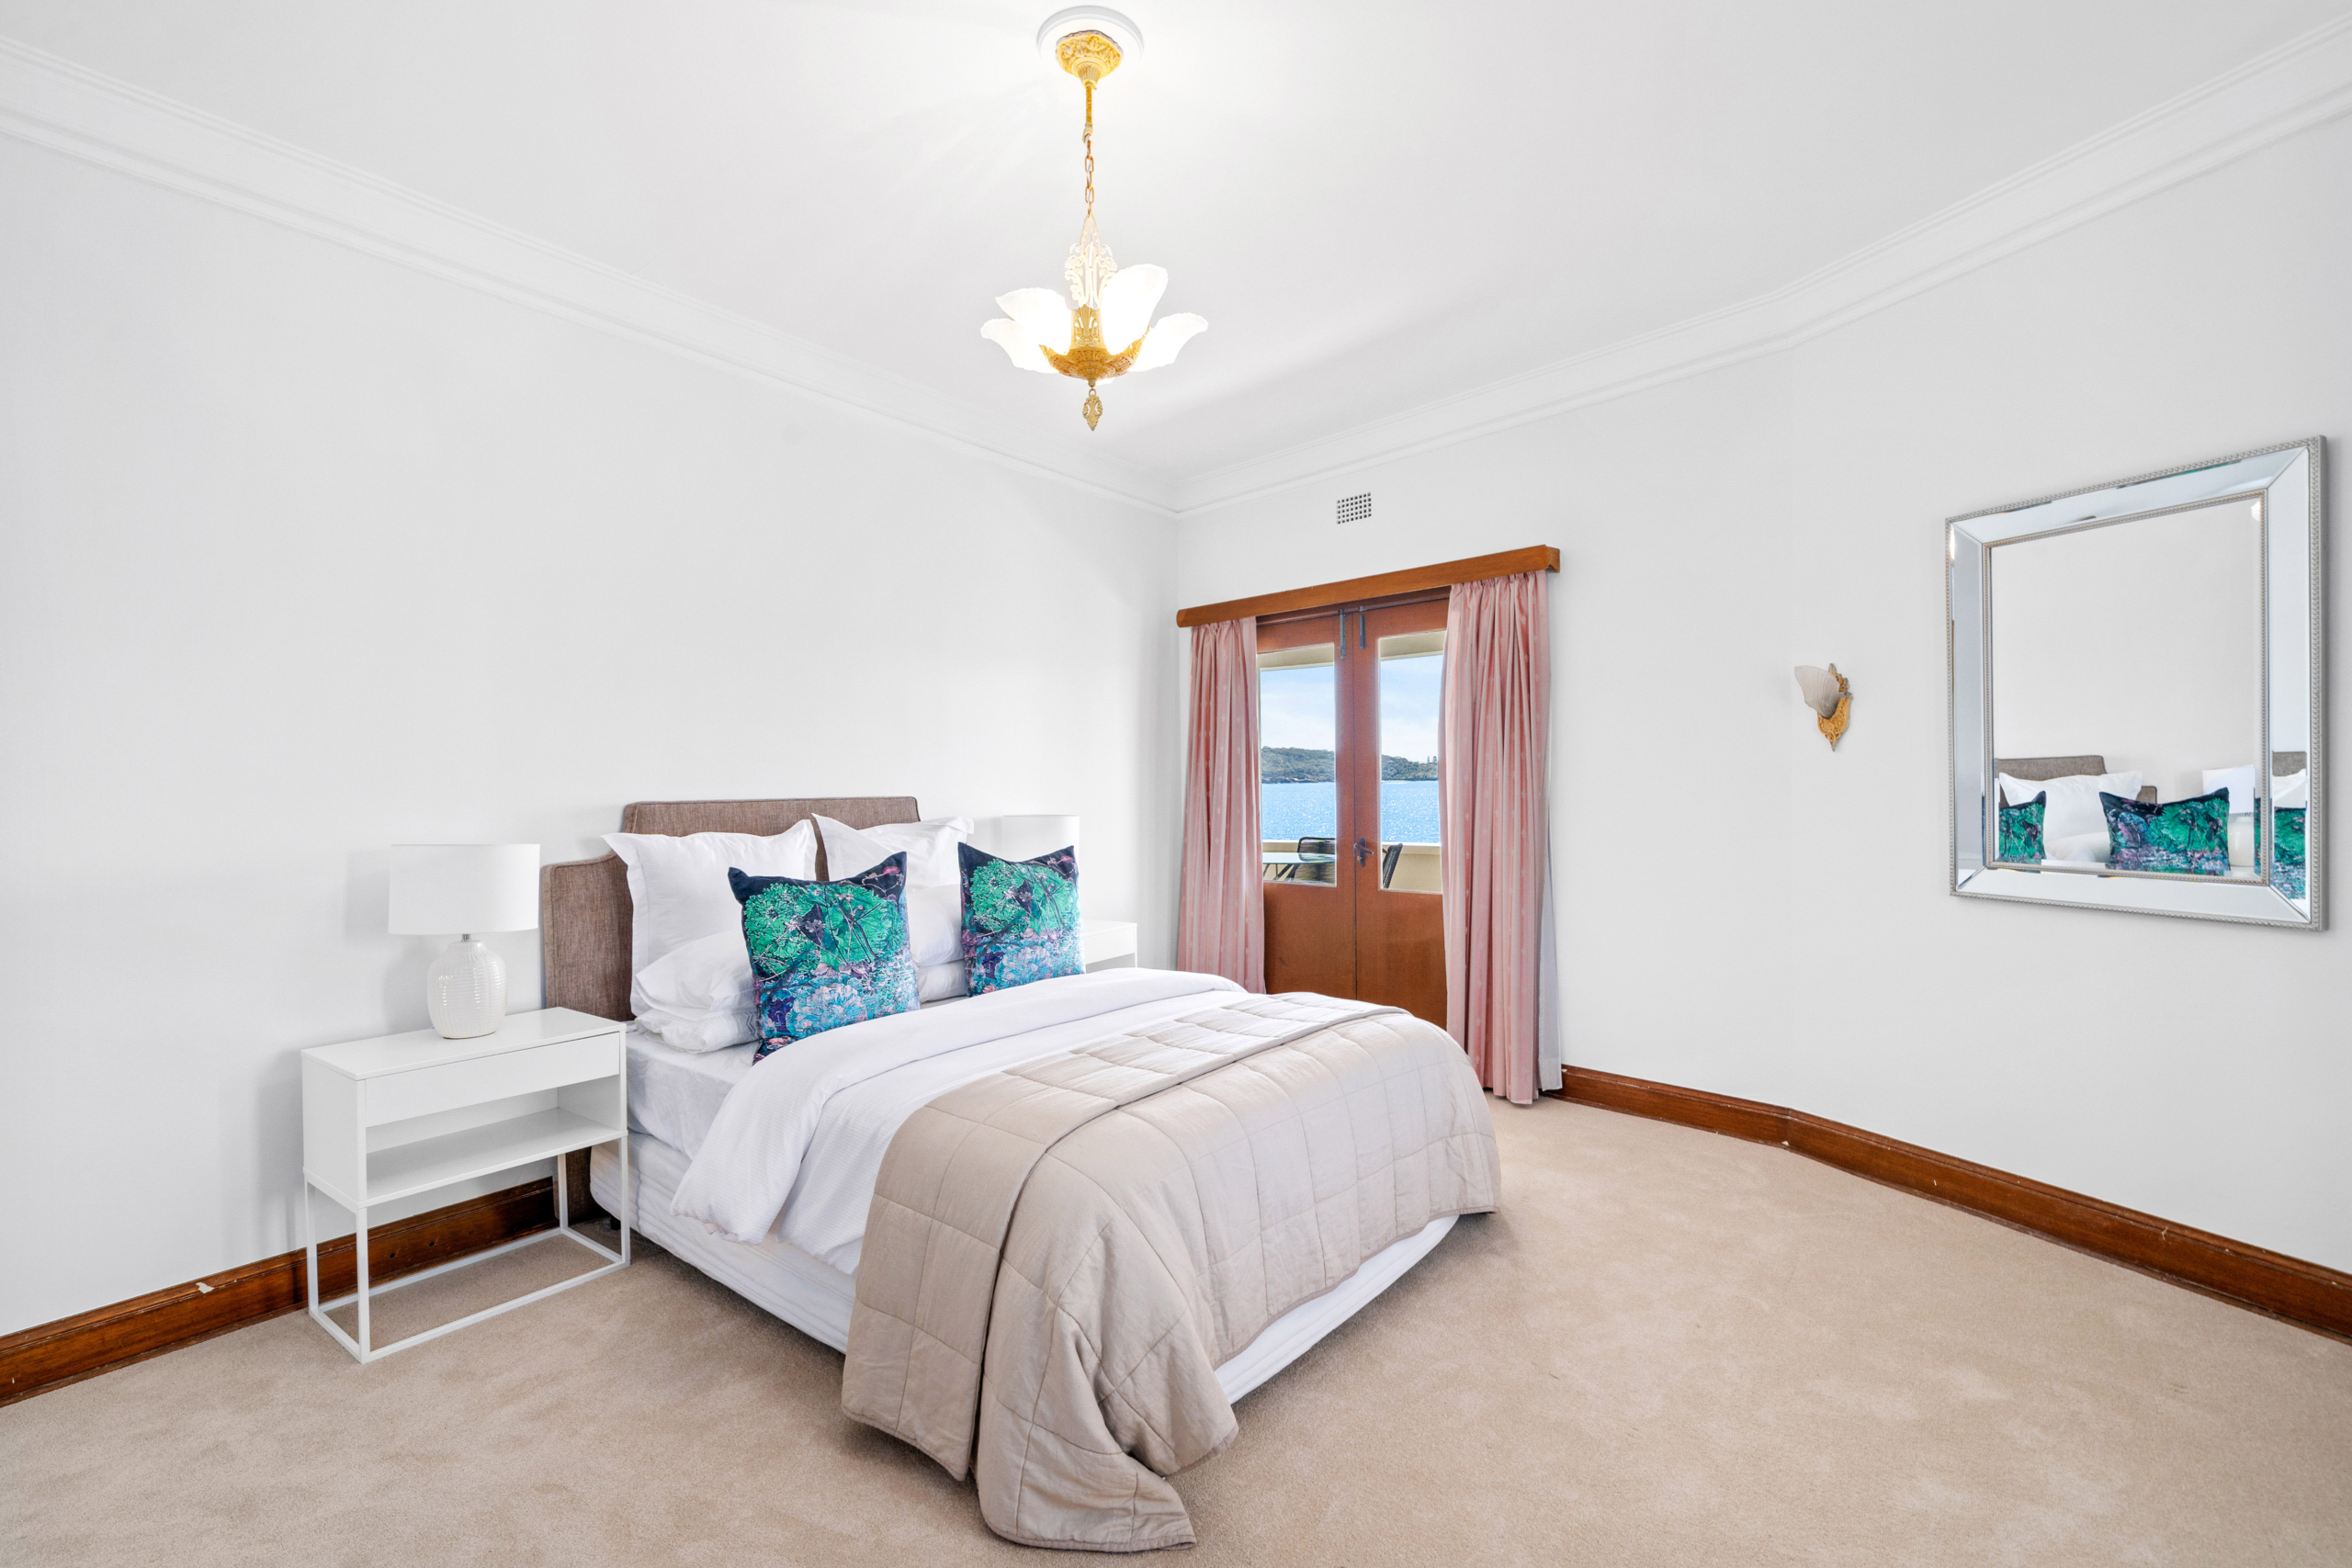 Phòng ngủ dành cho khách này có trần nhà rất cao, bày trí đèn theo kiểu cổ điển và phong cách đơn giản, trang nhã. (Ảnh: Đăng dưới sự cho phép của công ty Sydney Sotheby’s International Realty)